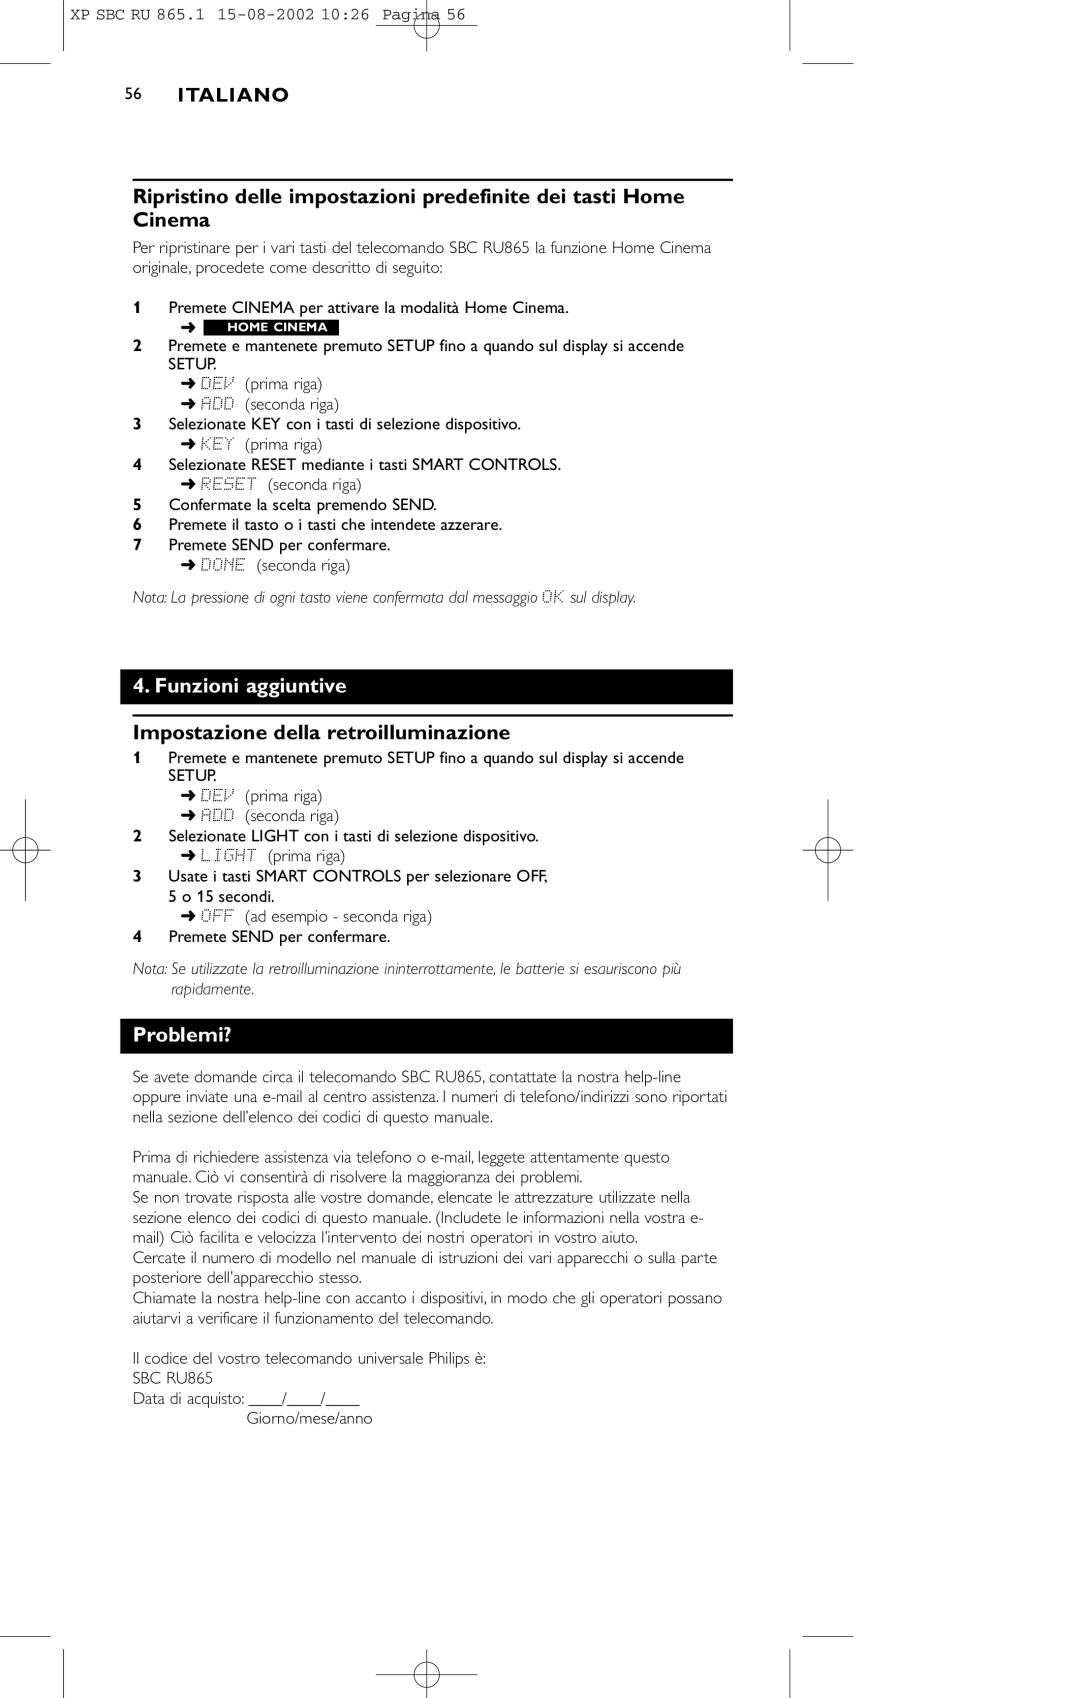 Philips SBC RU 865/00 manual Funzioni aggiuntive, Impostazione della retroilluminazione, Problemi? 